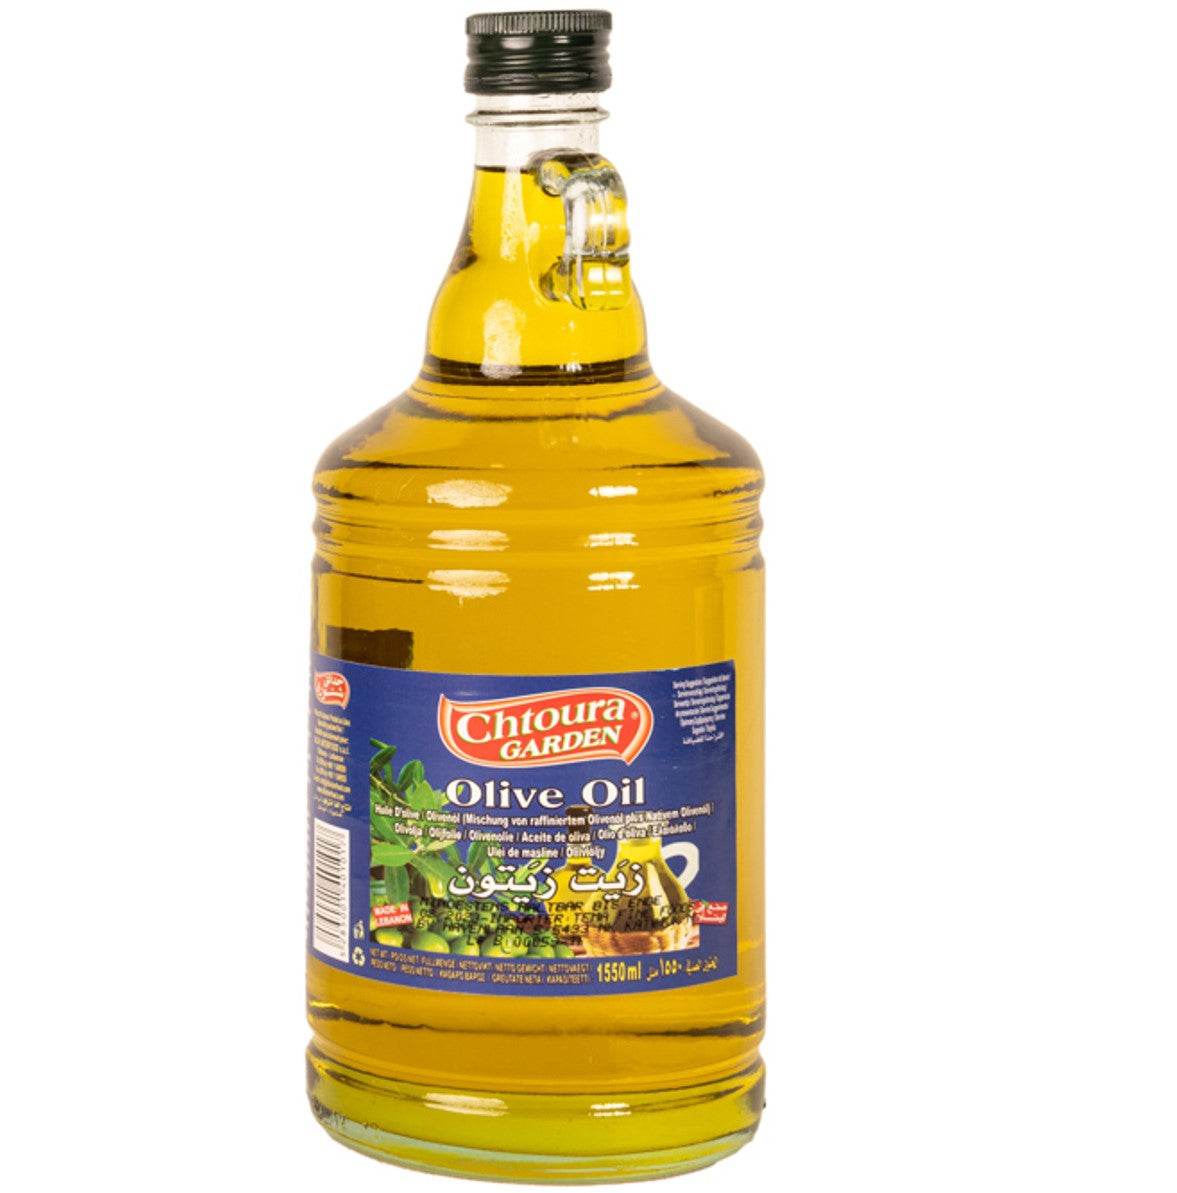 Aceite oliva 1550ml chtoura